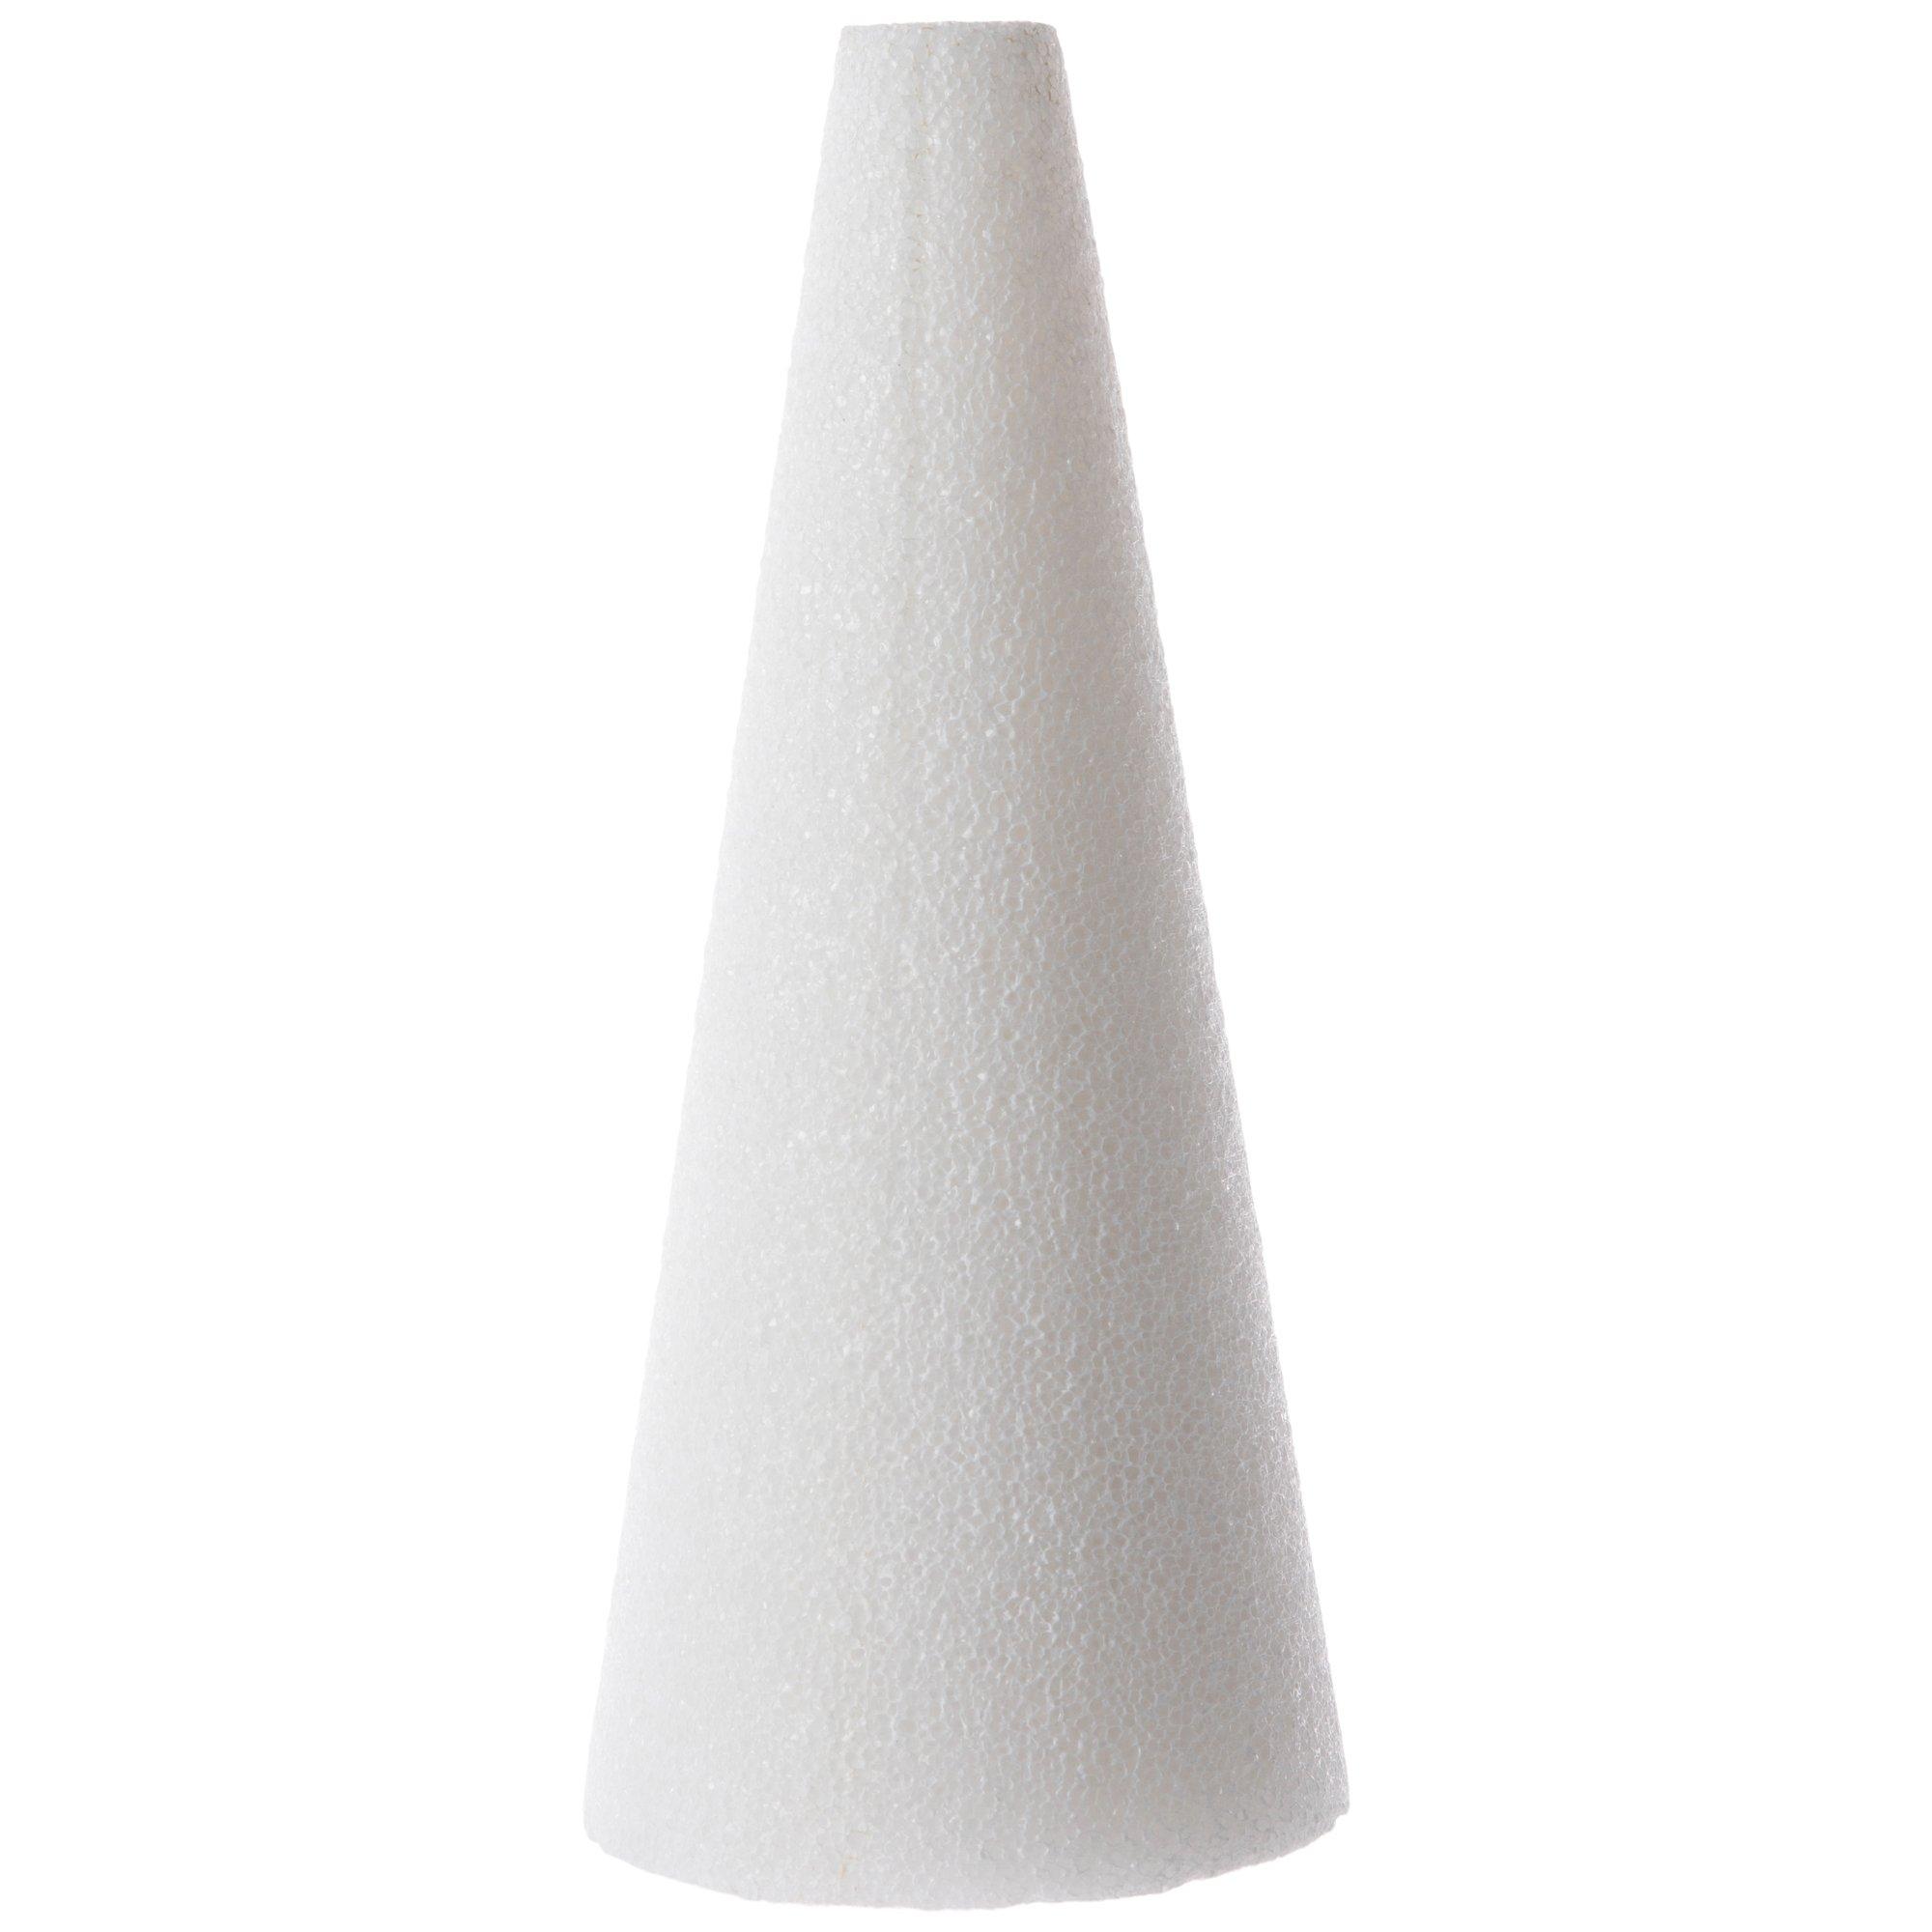 Soft Foam Cone - Approx 4-1/4 Inch